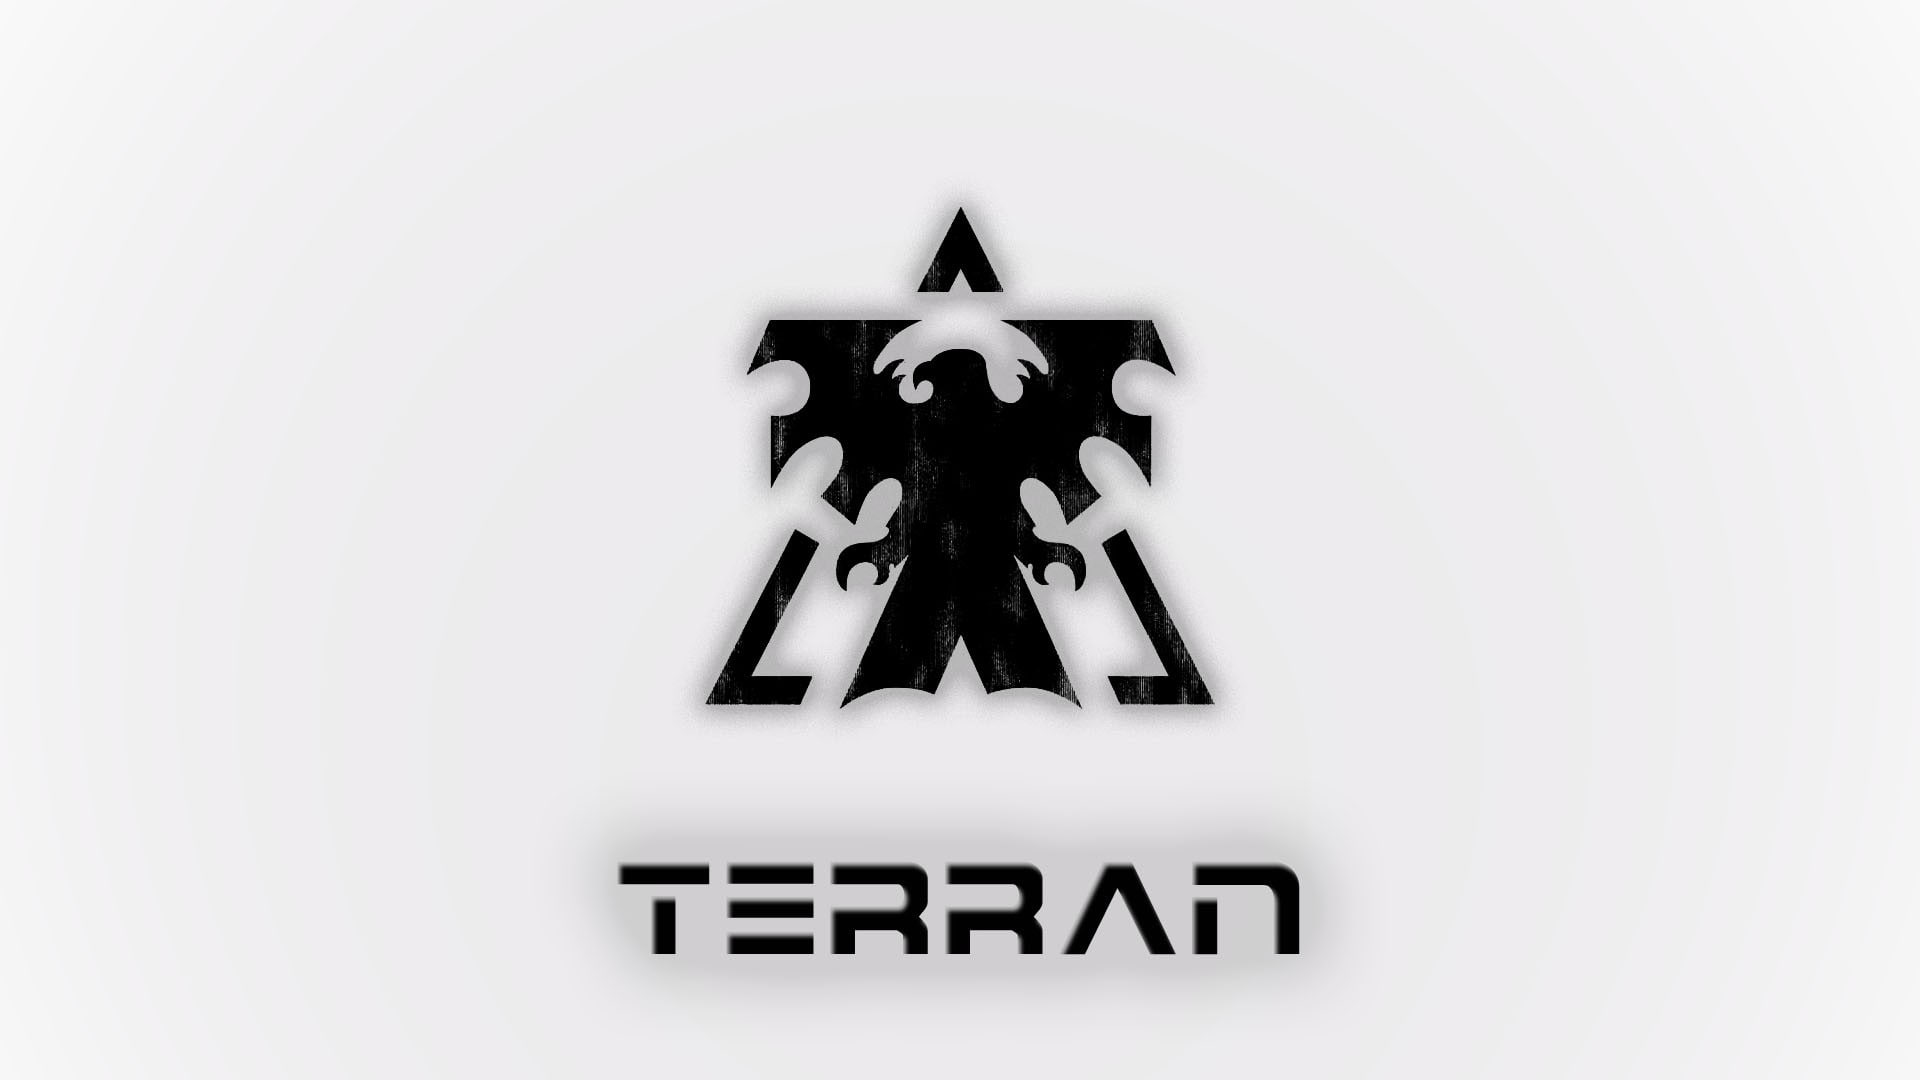 StarCraft, Terran, video games, minimalism, white background